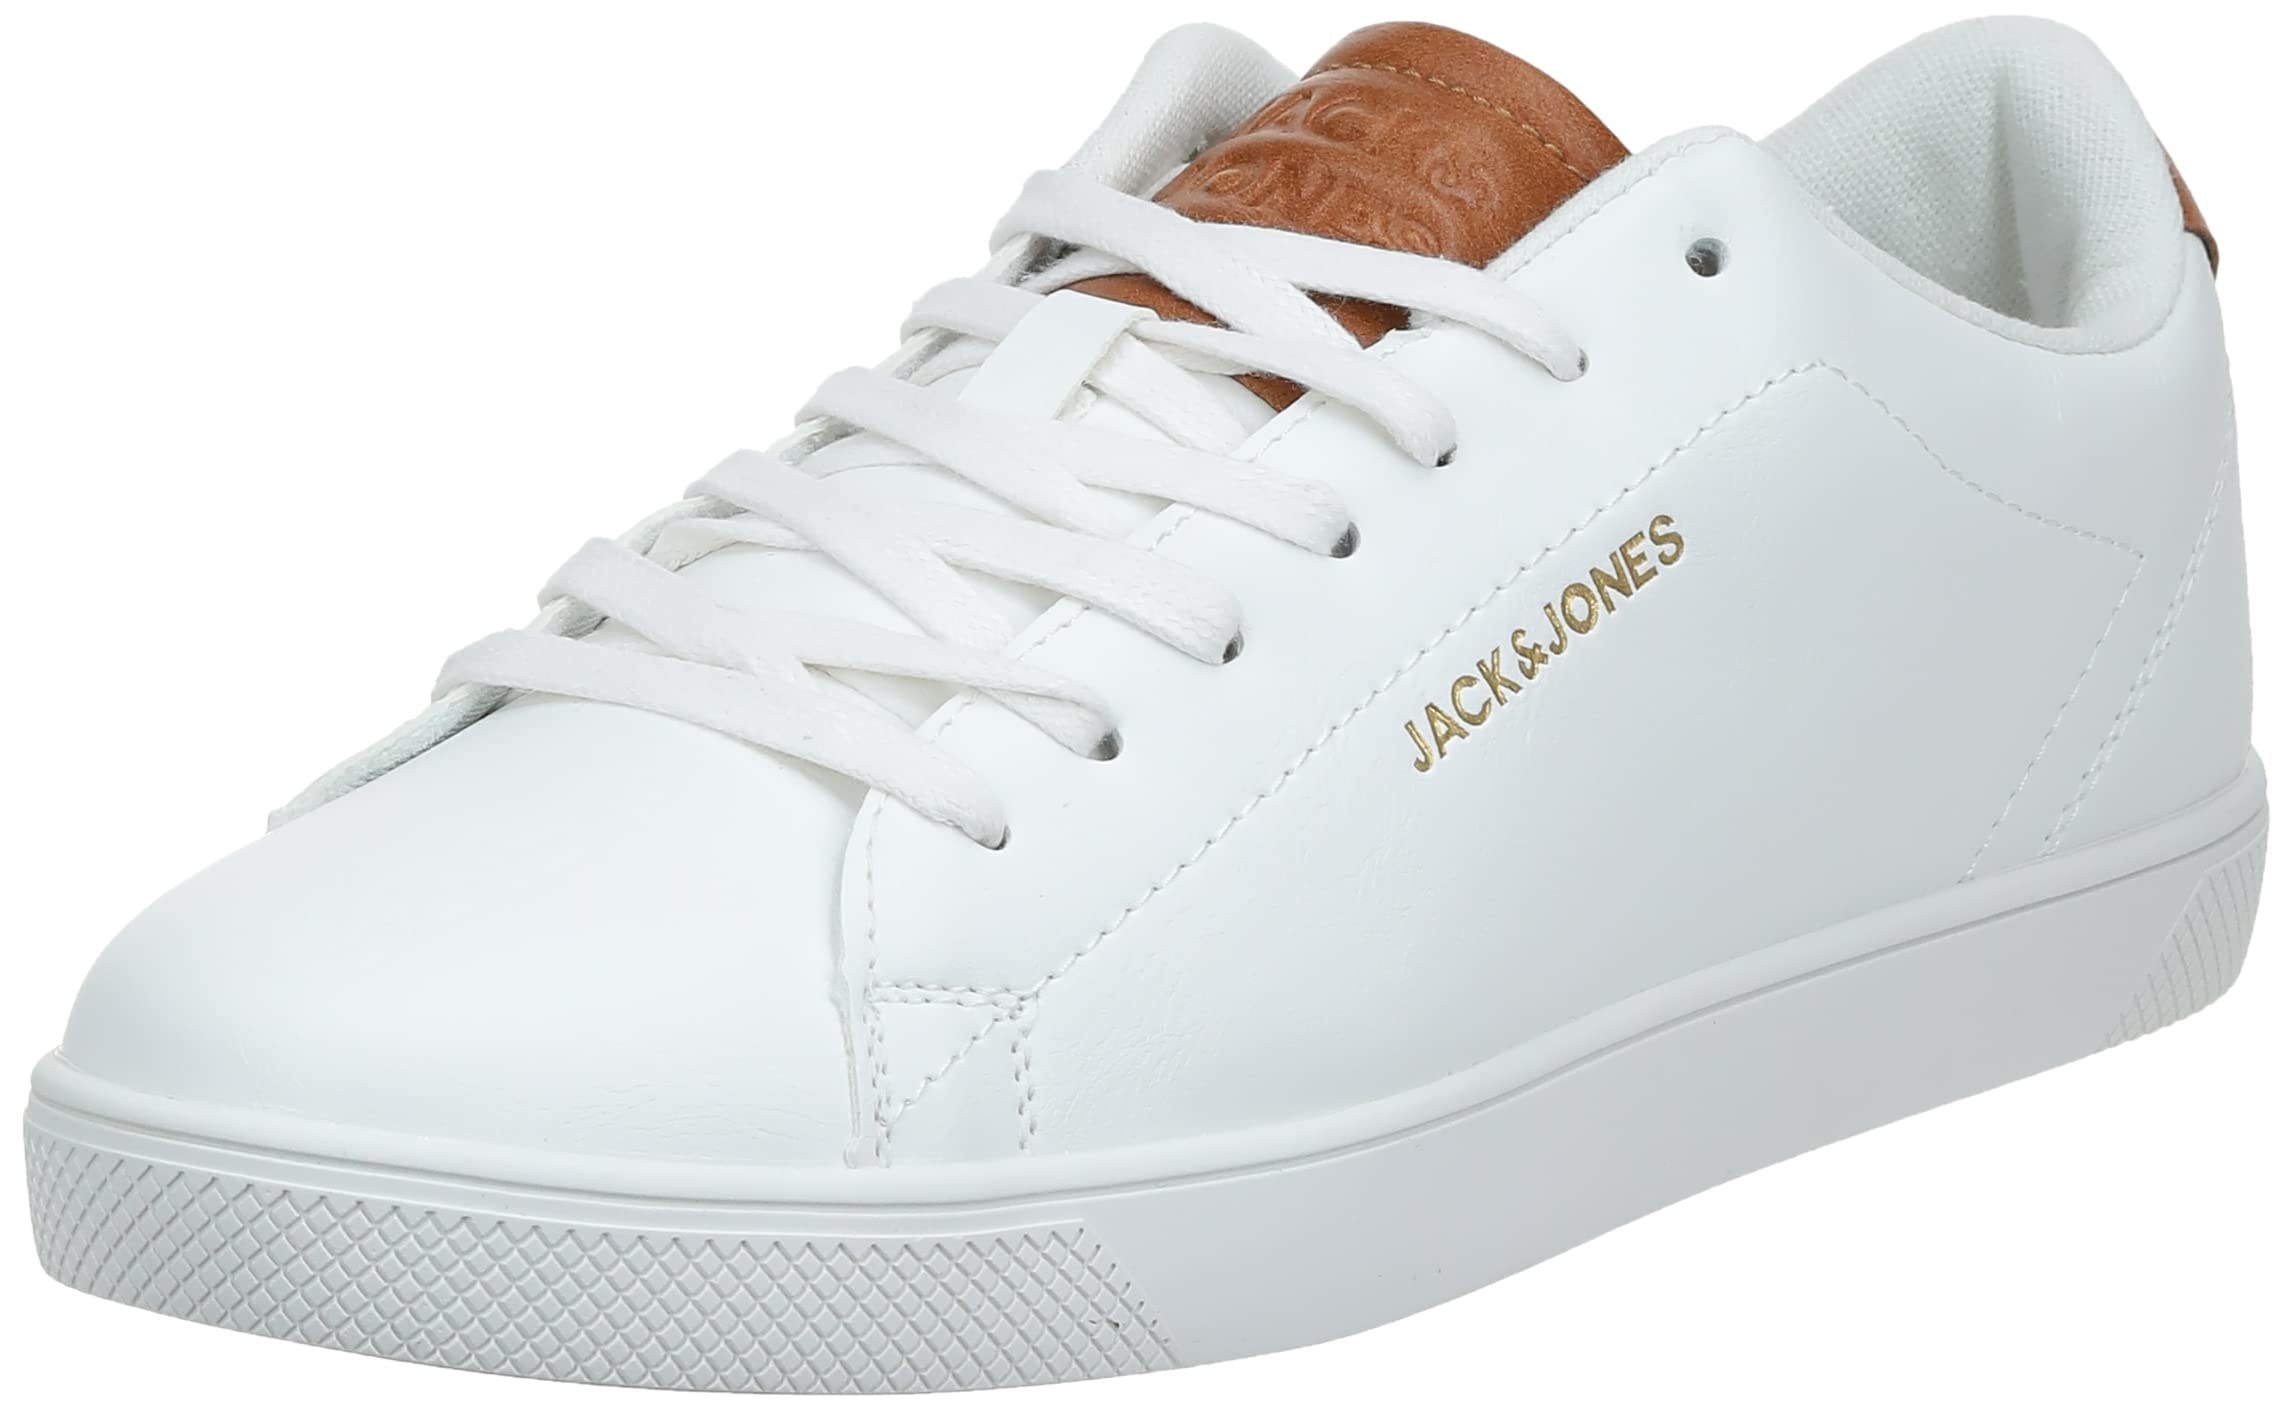 Jack & Jones Herren Jfwboss Pu Sneaker, White, 43 EU